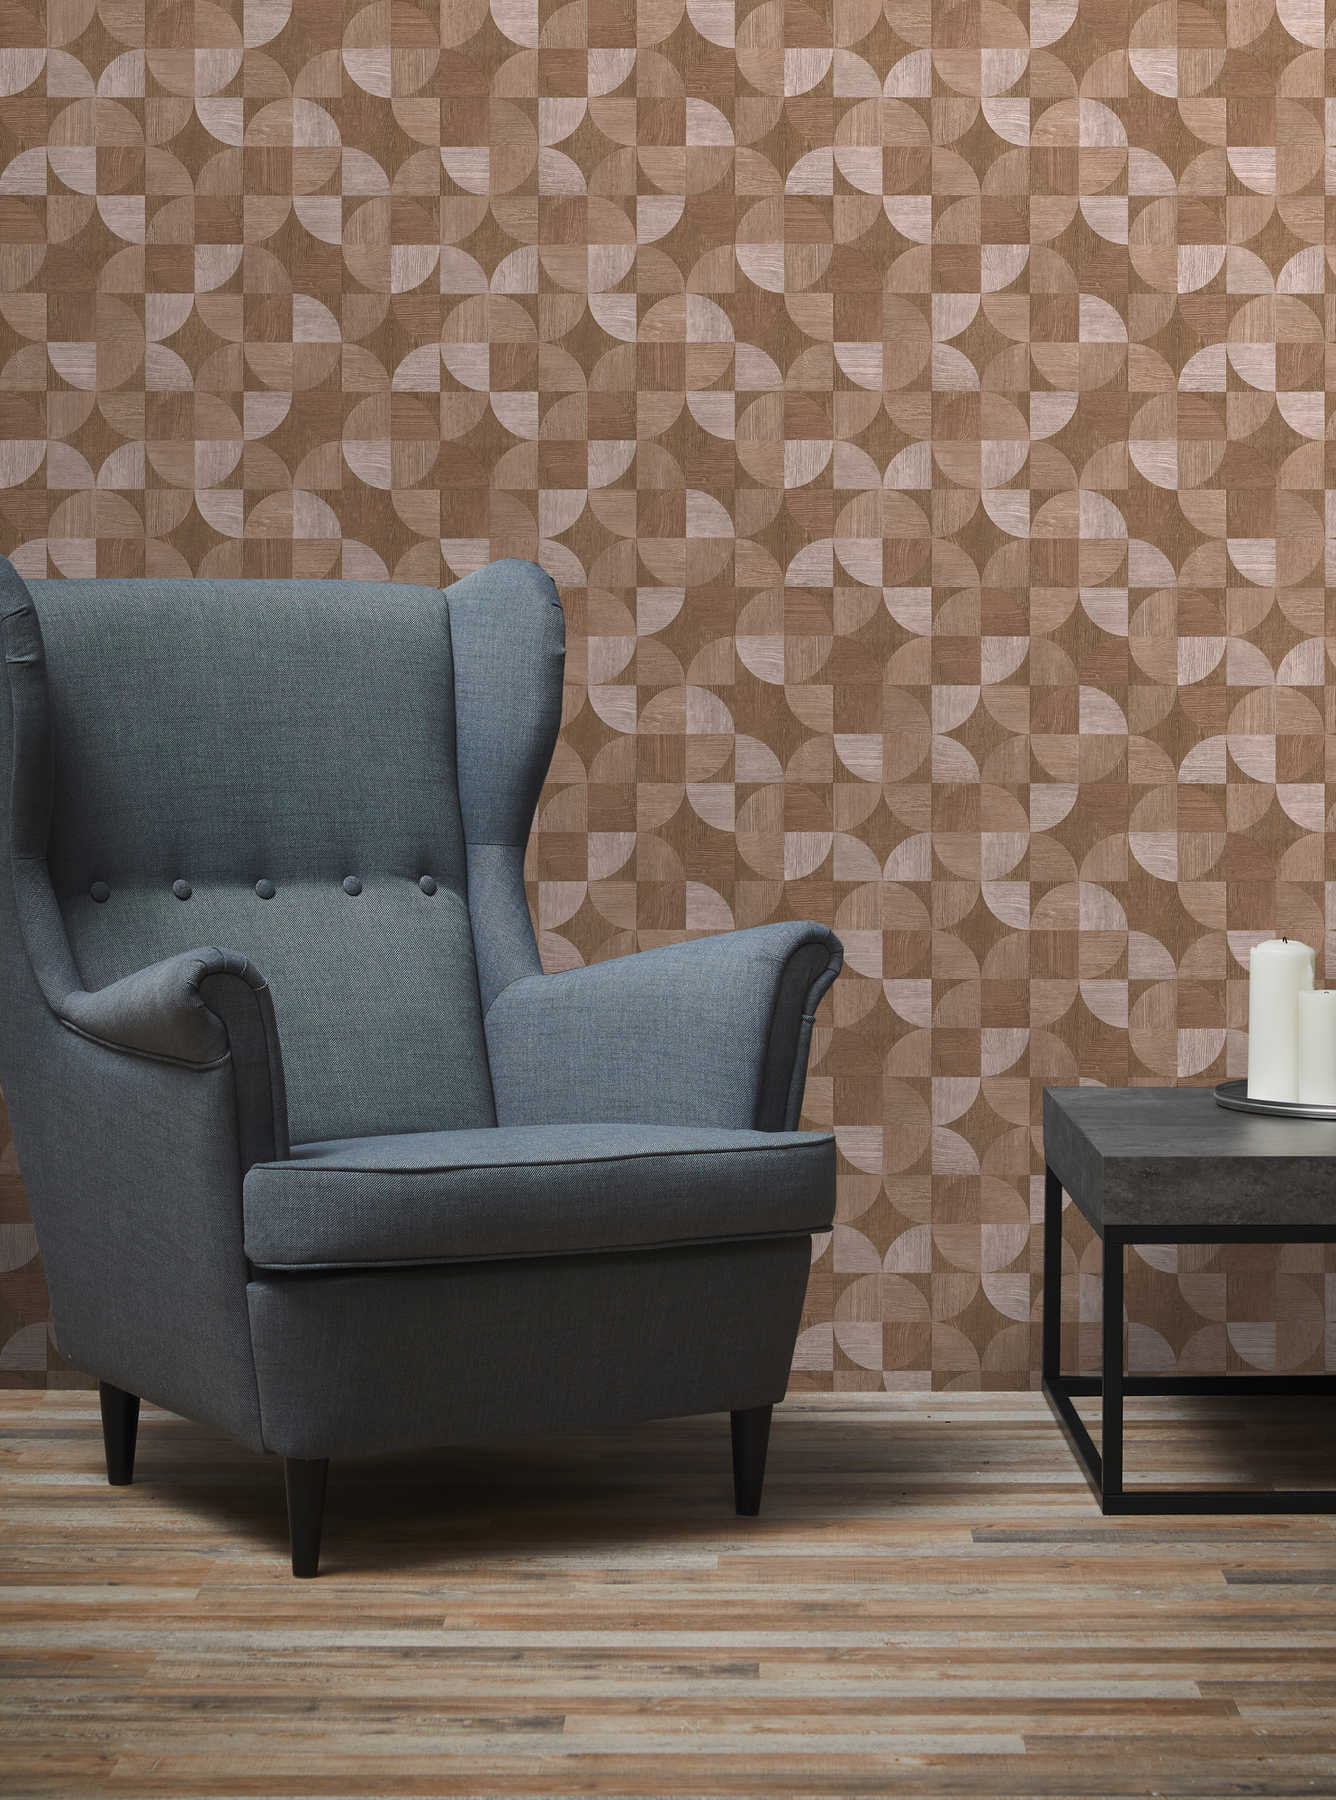             Behang met grafisch patroon in houtlook - bruin, beige
        